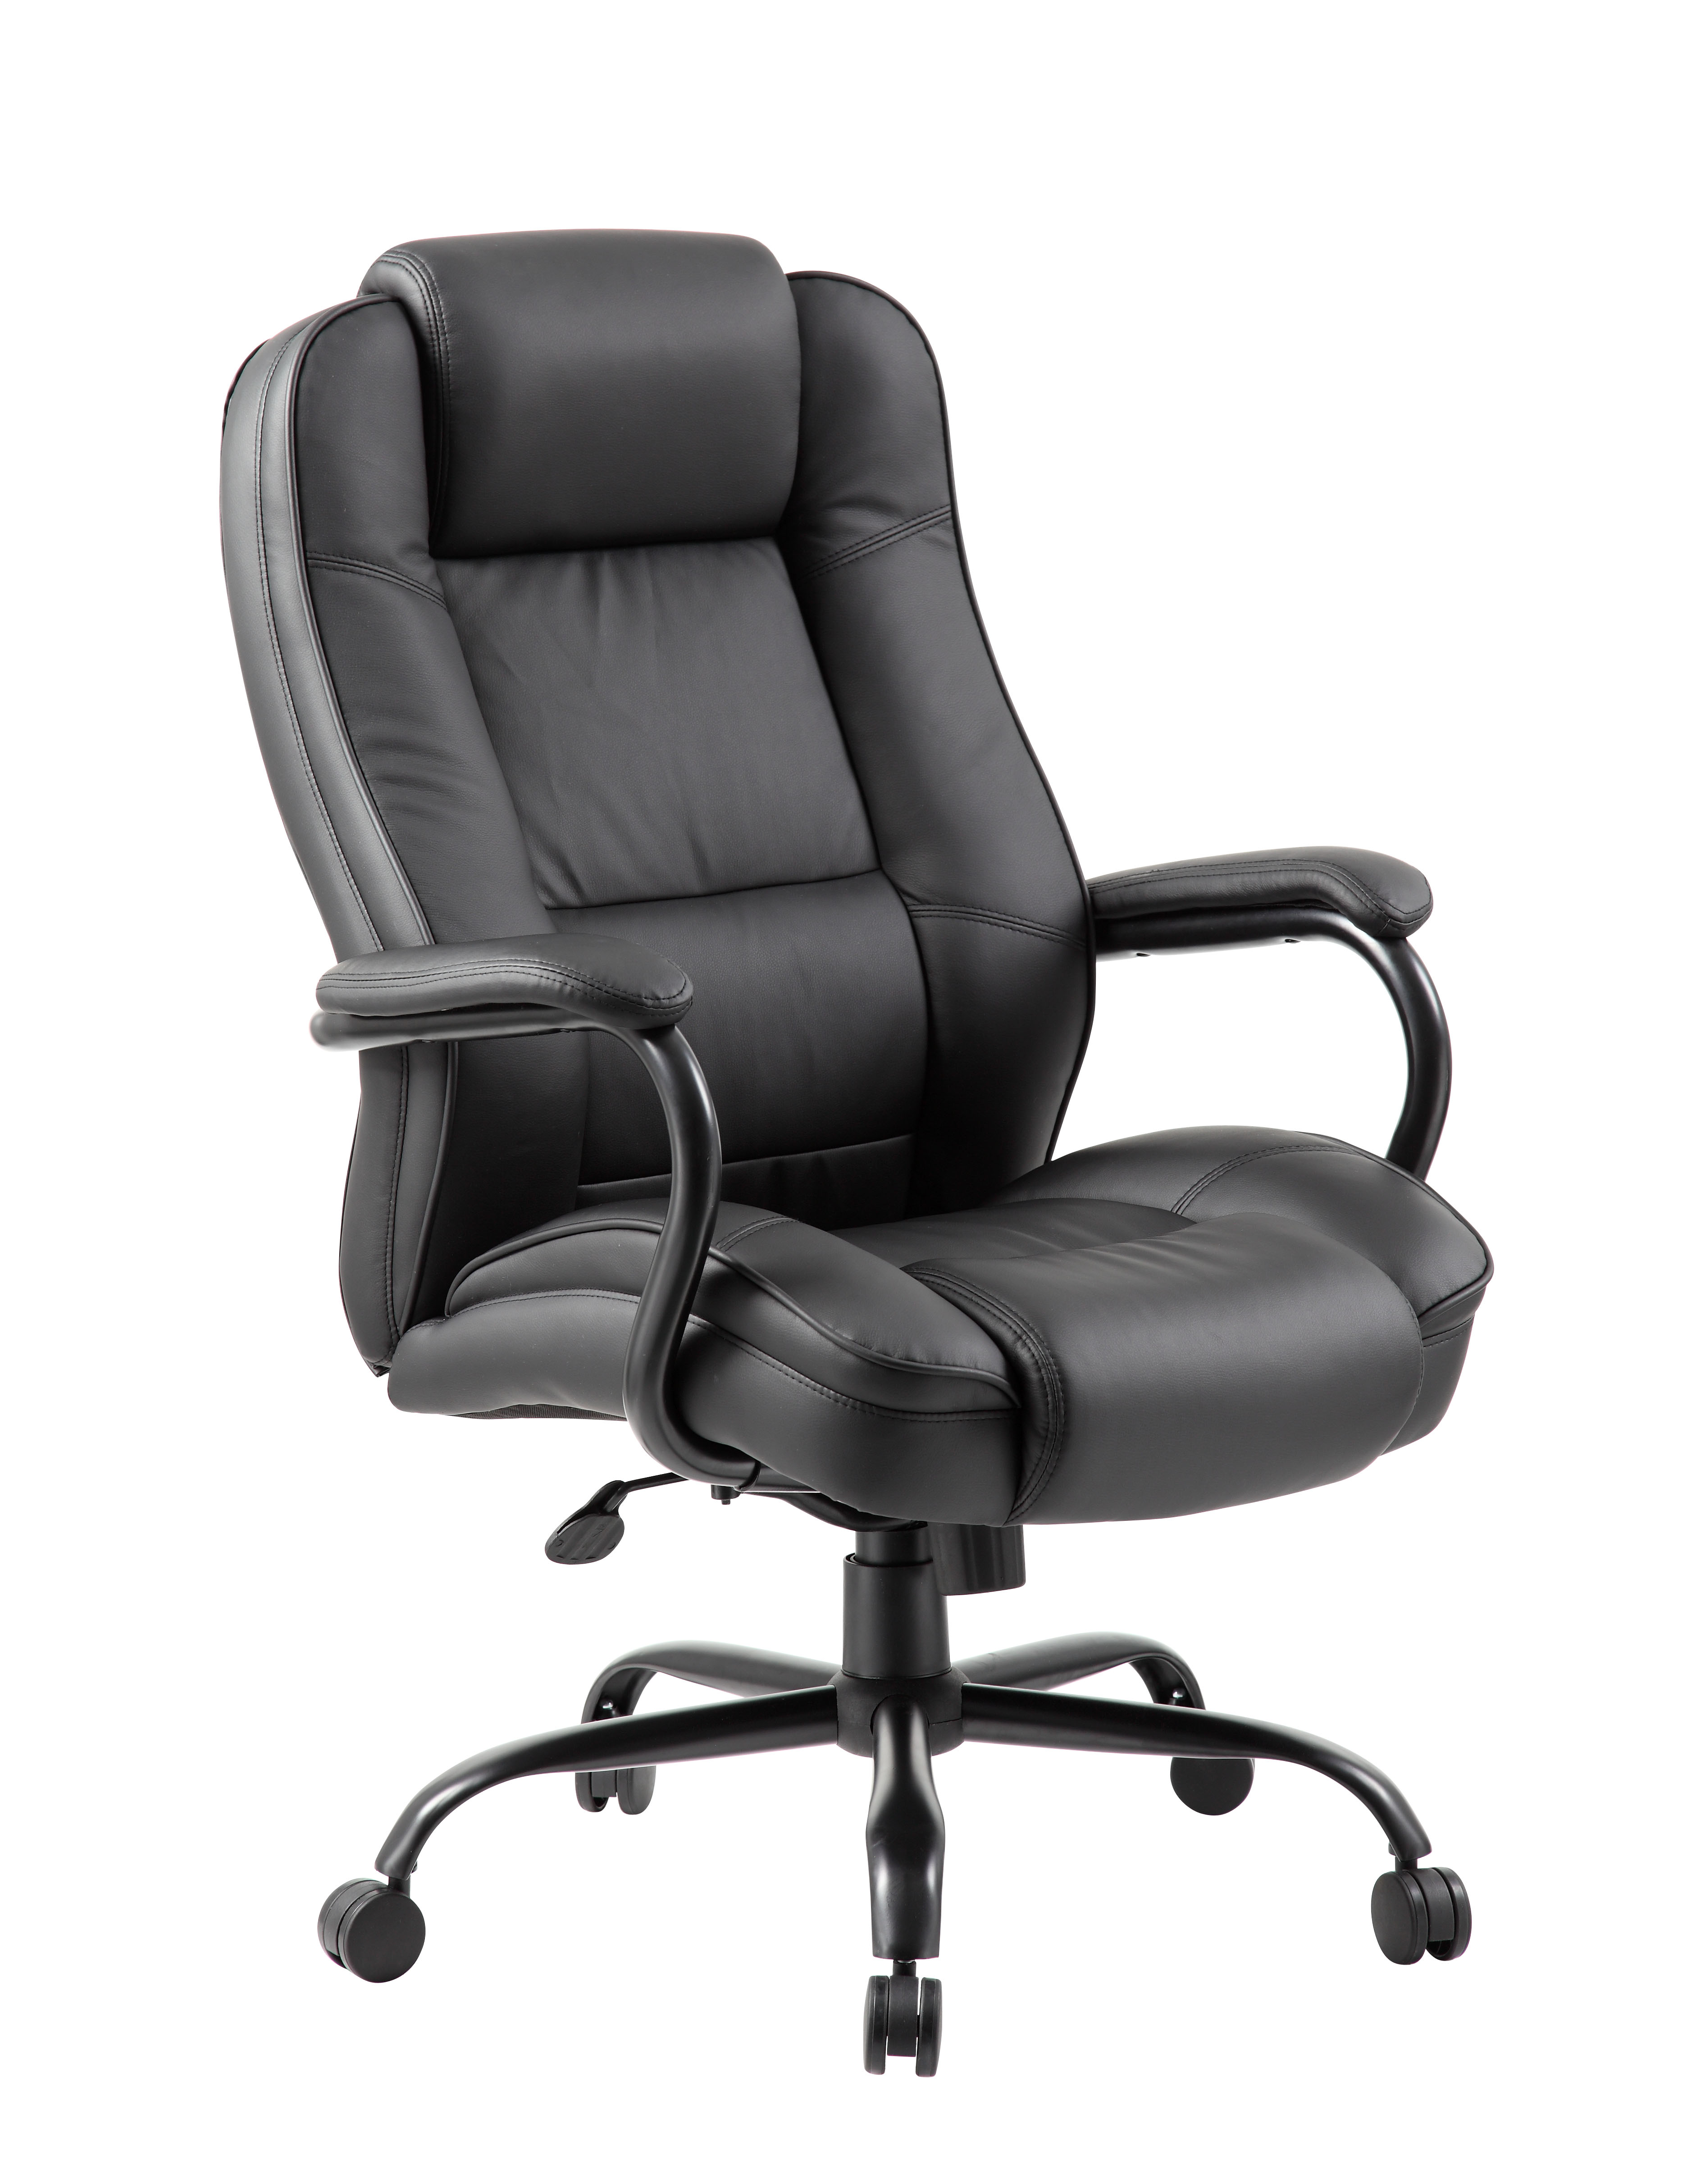 Heavy Duty Executive Chair - Black